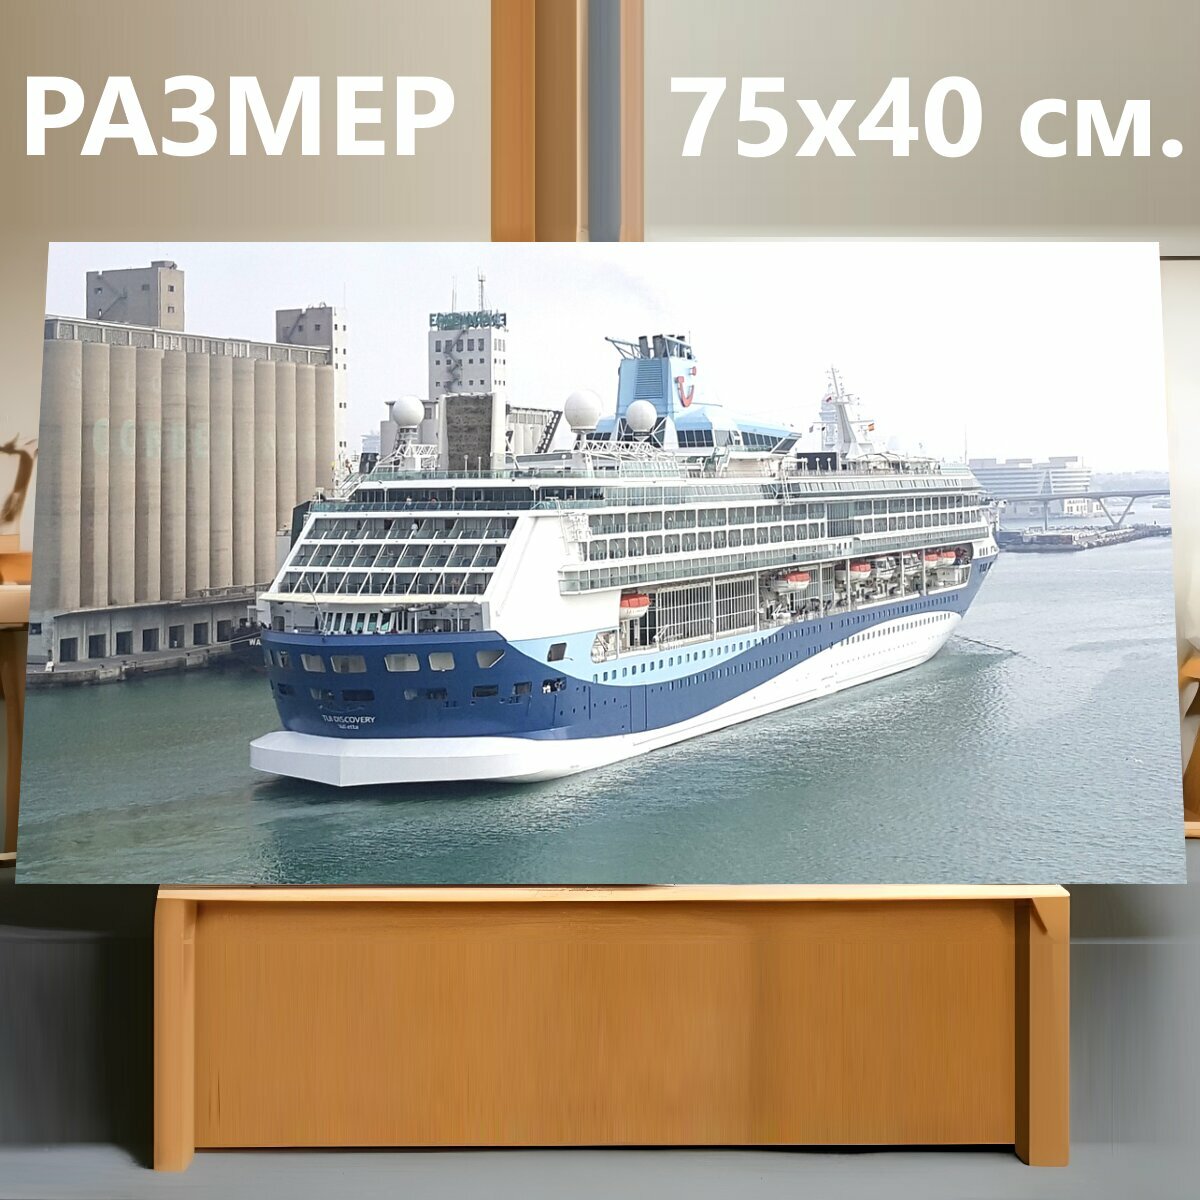 Картина на холсте "Круизный корабль, круиз, судно" на подрамнике 75х40 см. для интерьера